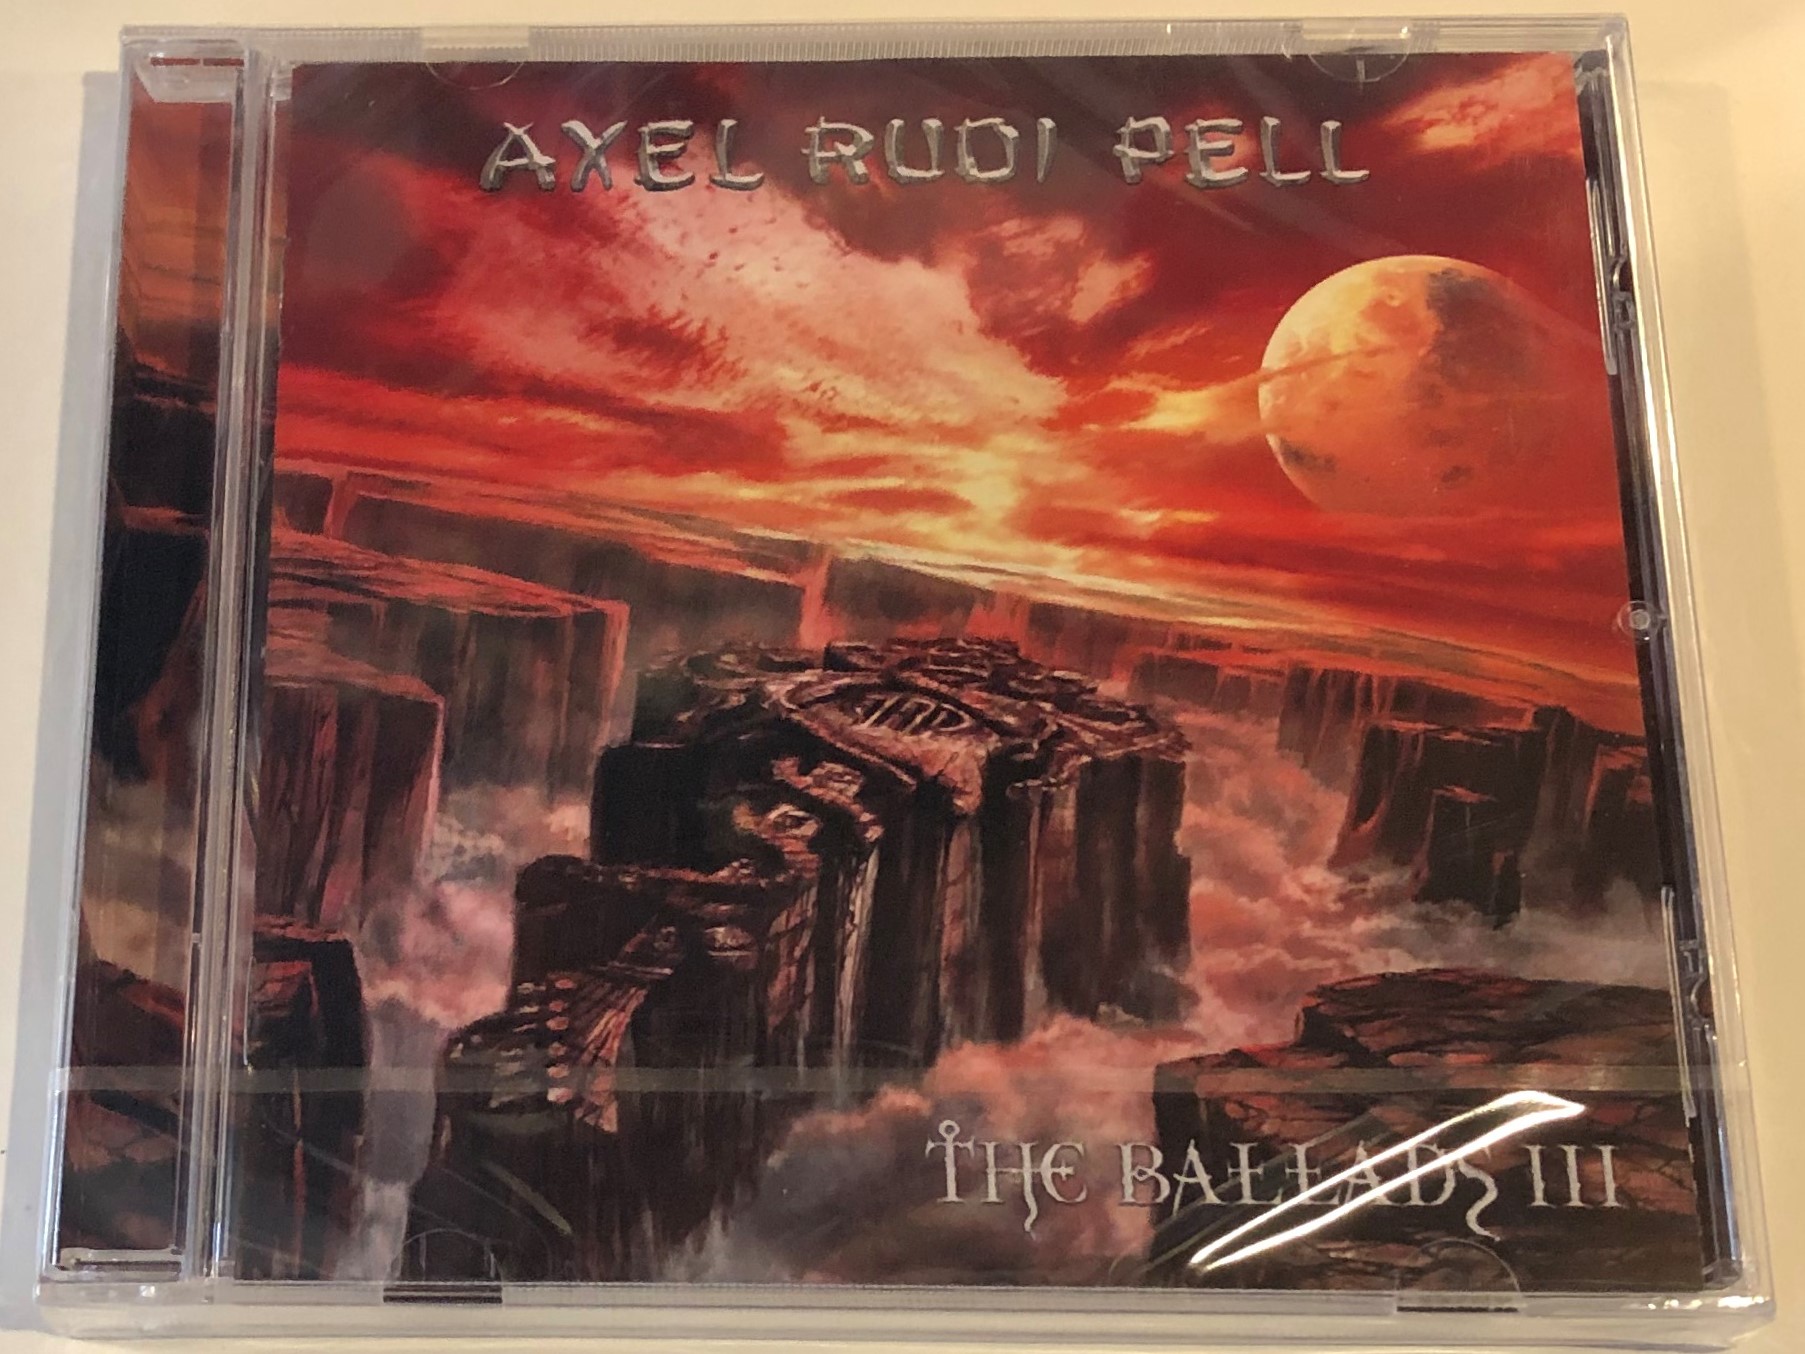 axel-rudi-pell-the-ballads-iii-bmg-audio-cd-2004-0693723699622-1-.jpg